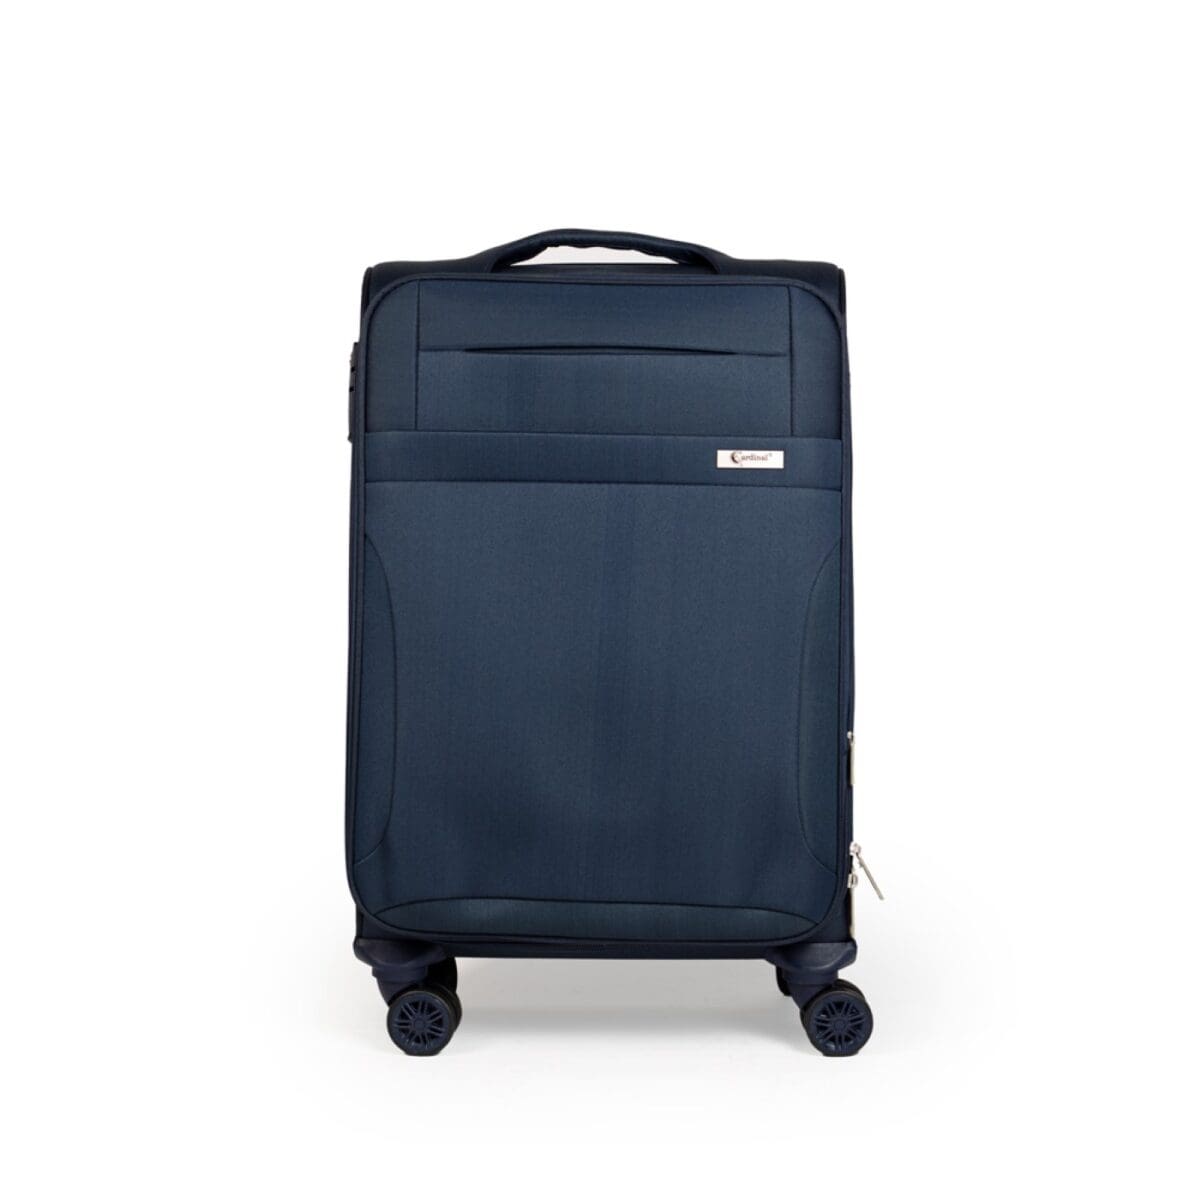 Βαλίτσα μεσαία με διπλά ροδάκια , tsa lock από υφασμάτινο υλικό σε μπλε , επεκτάσιμη .